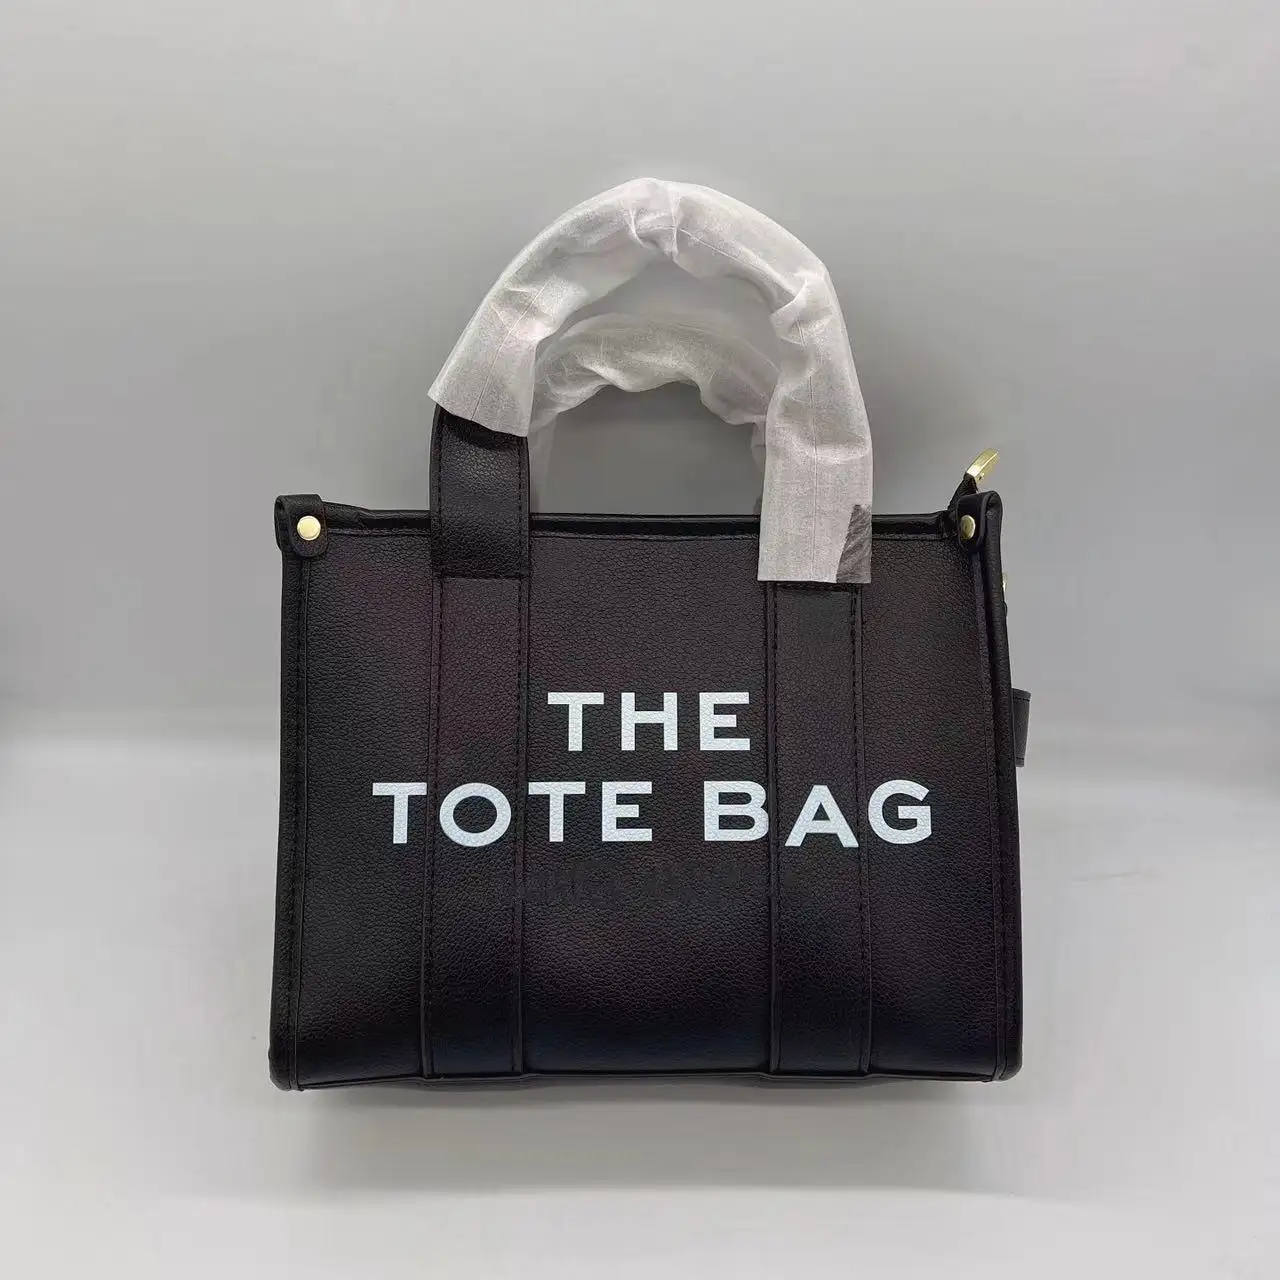 2022 Newest Fashion Bags Women Handbags Ladies Designer Handbags Womens Bags The Tote Bag Wholesale Purses